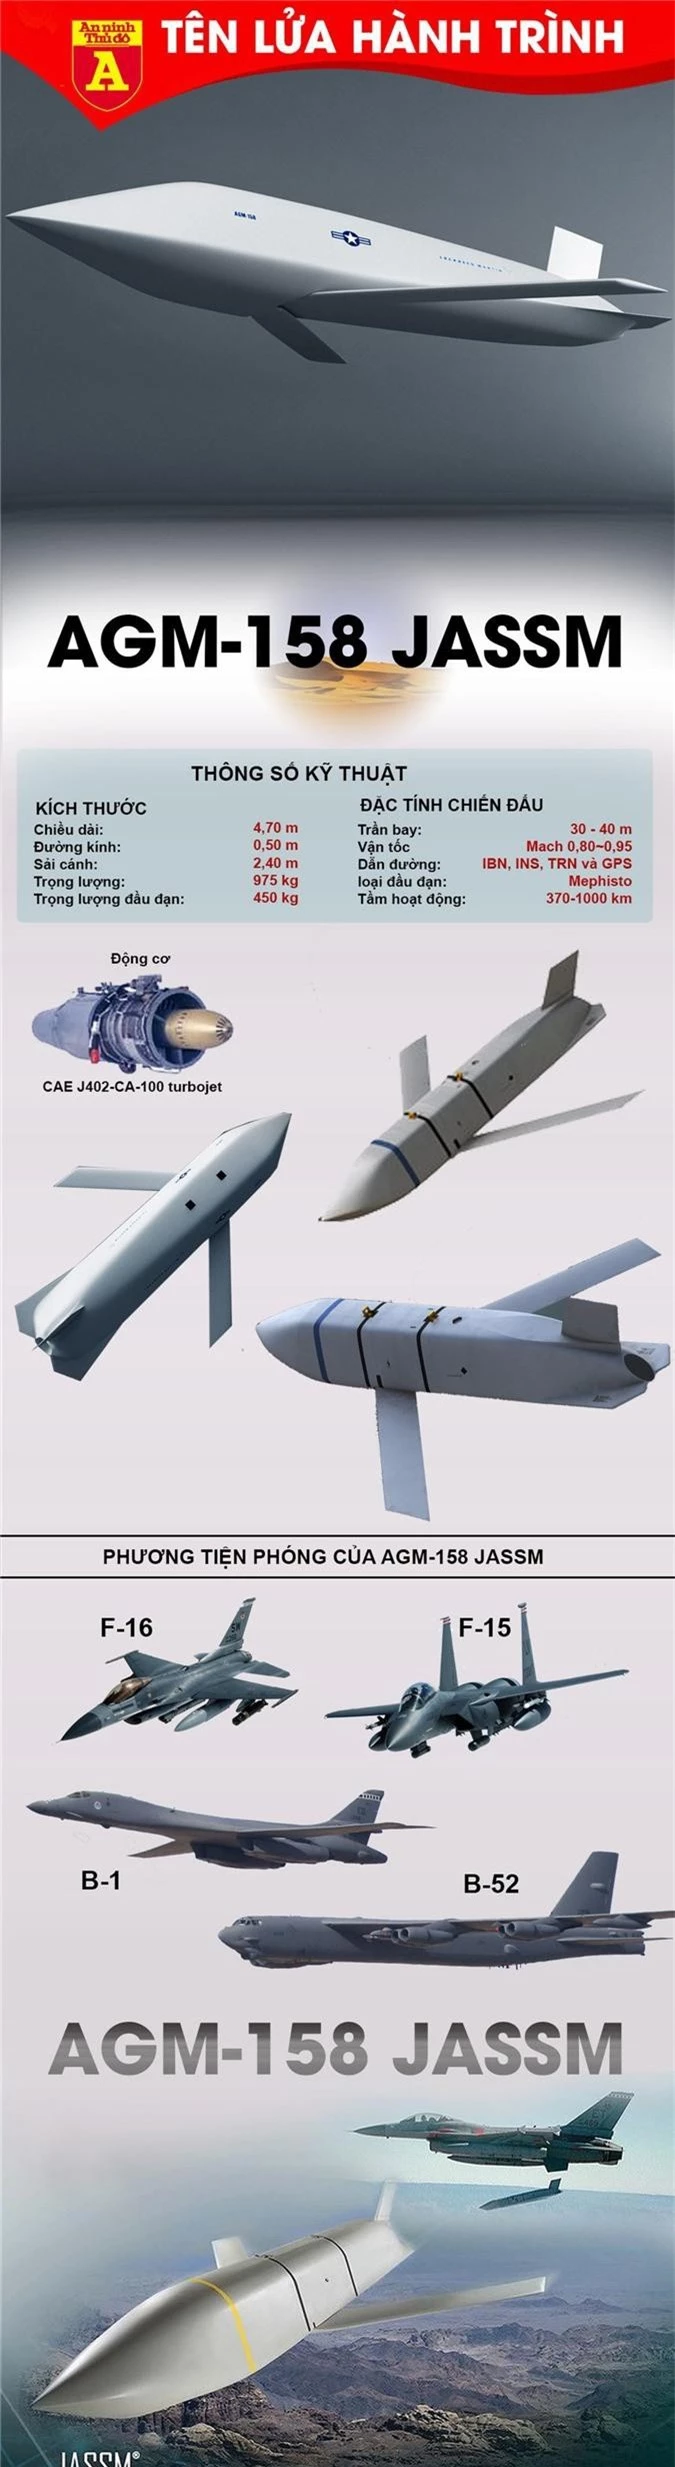 Tên lửa AGM-158 JASSM